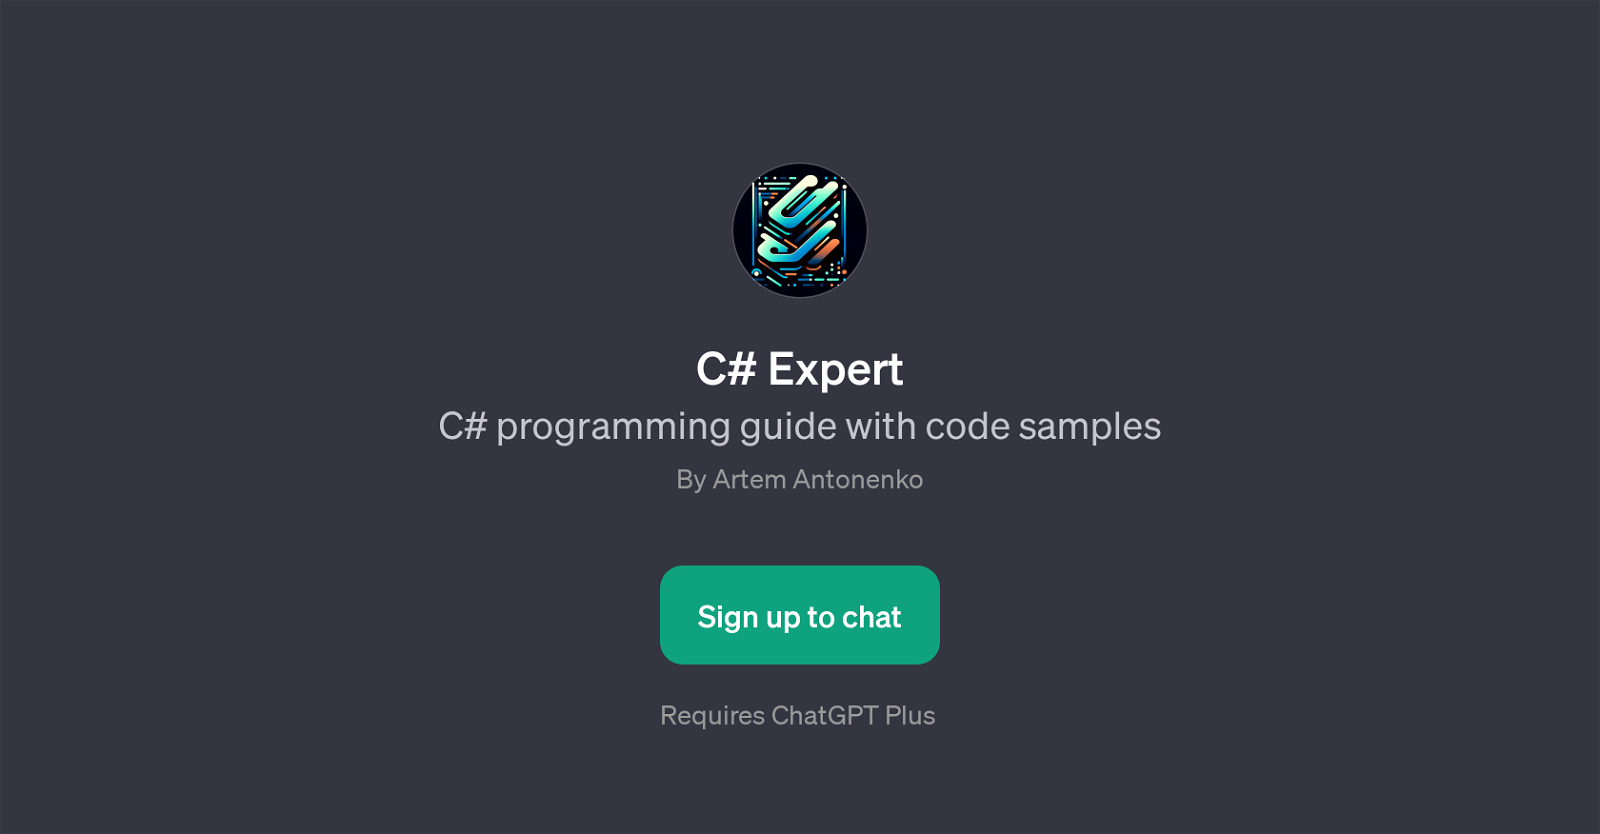 C# Expert website